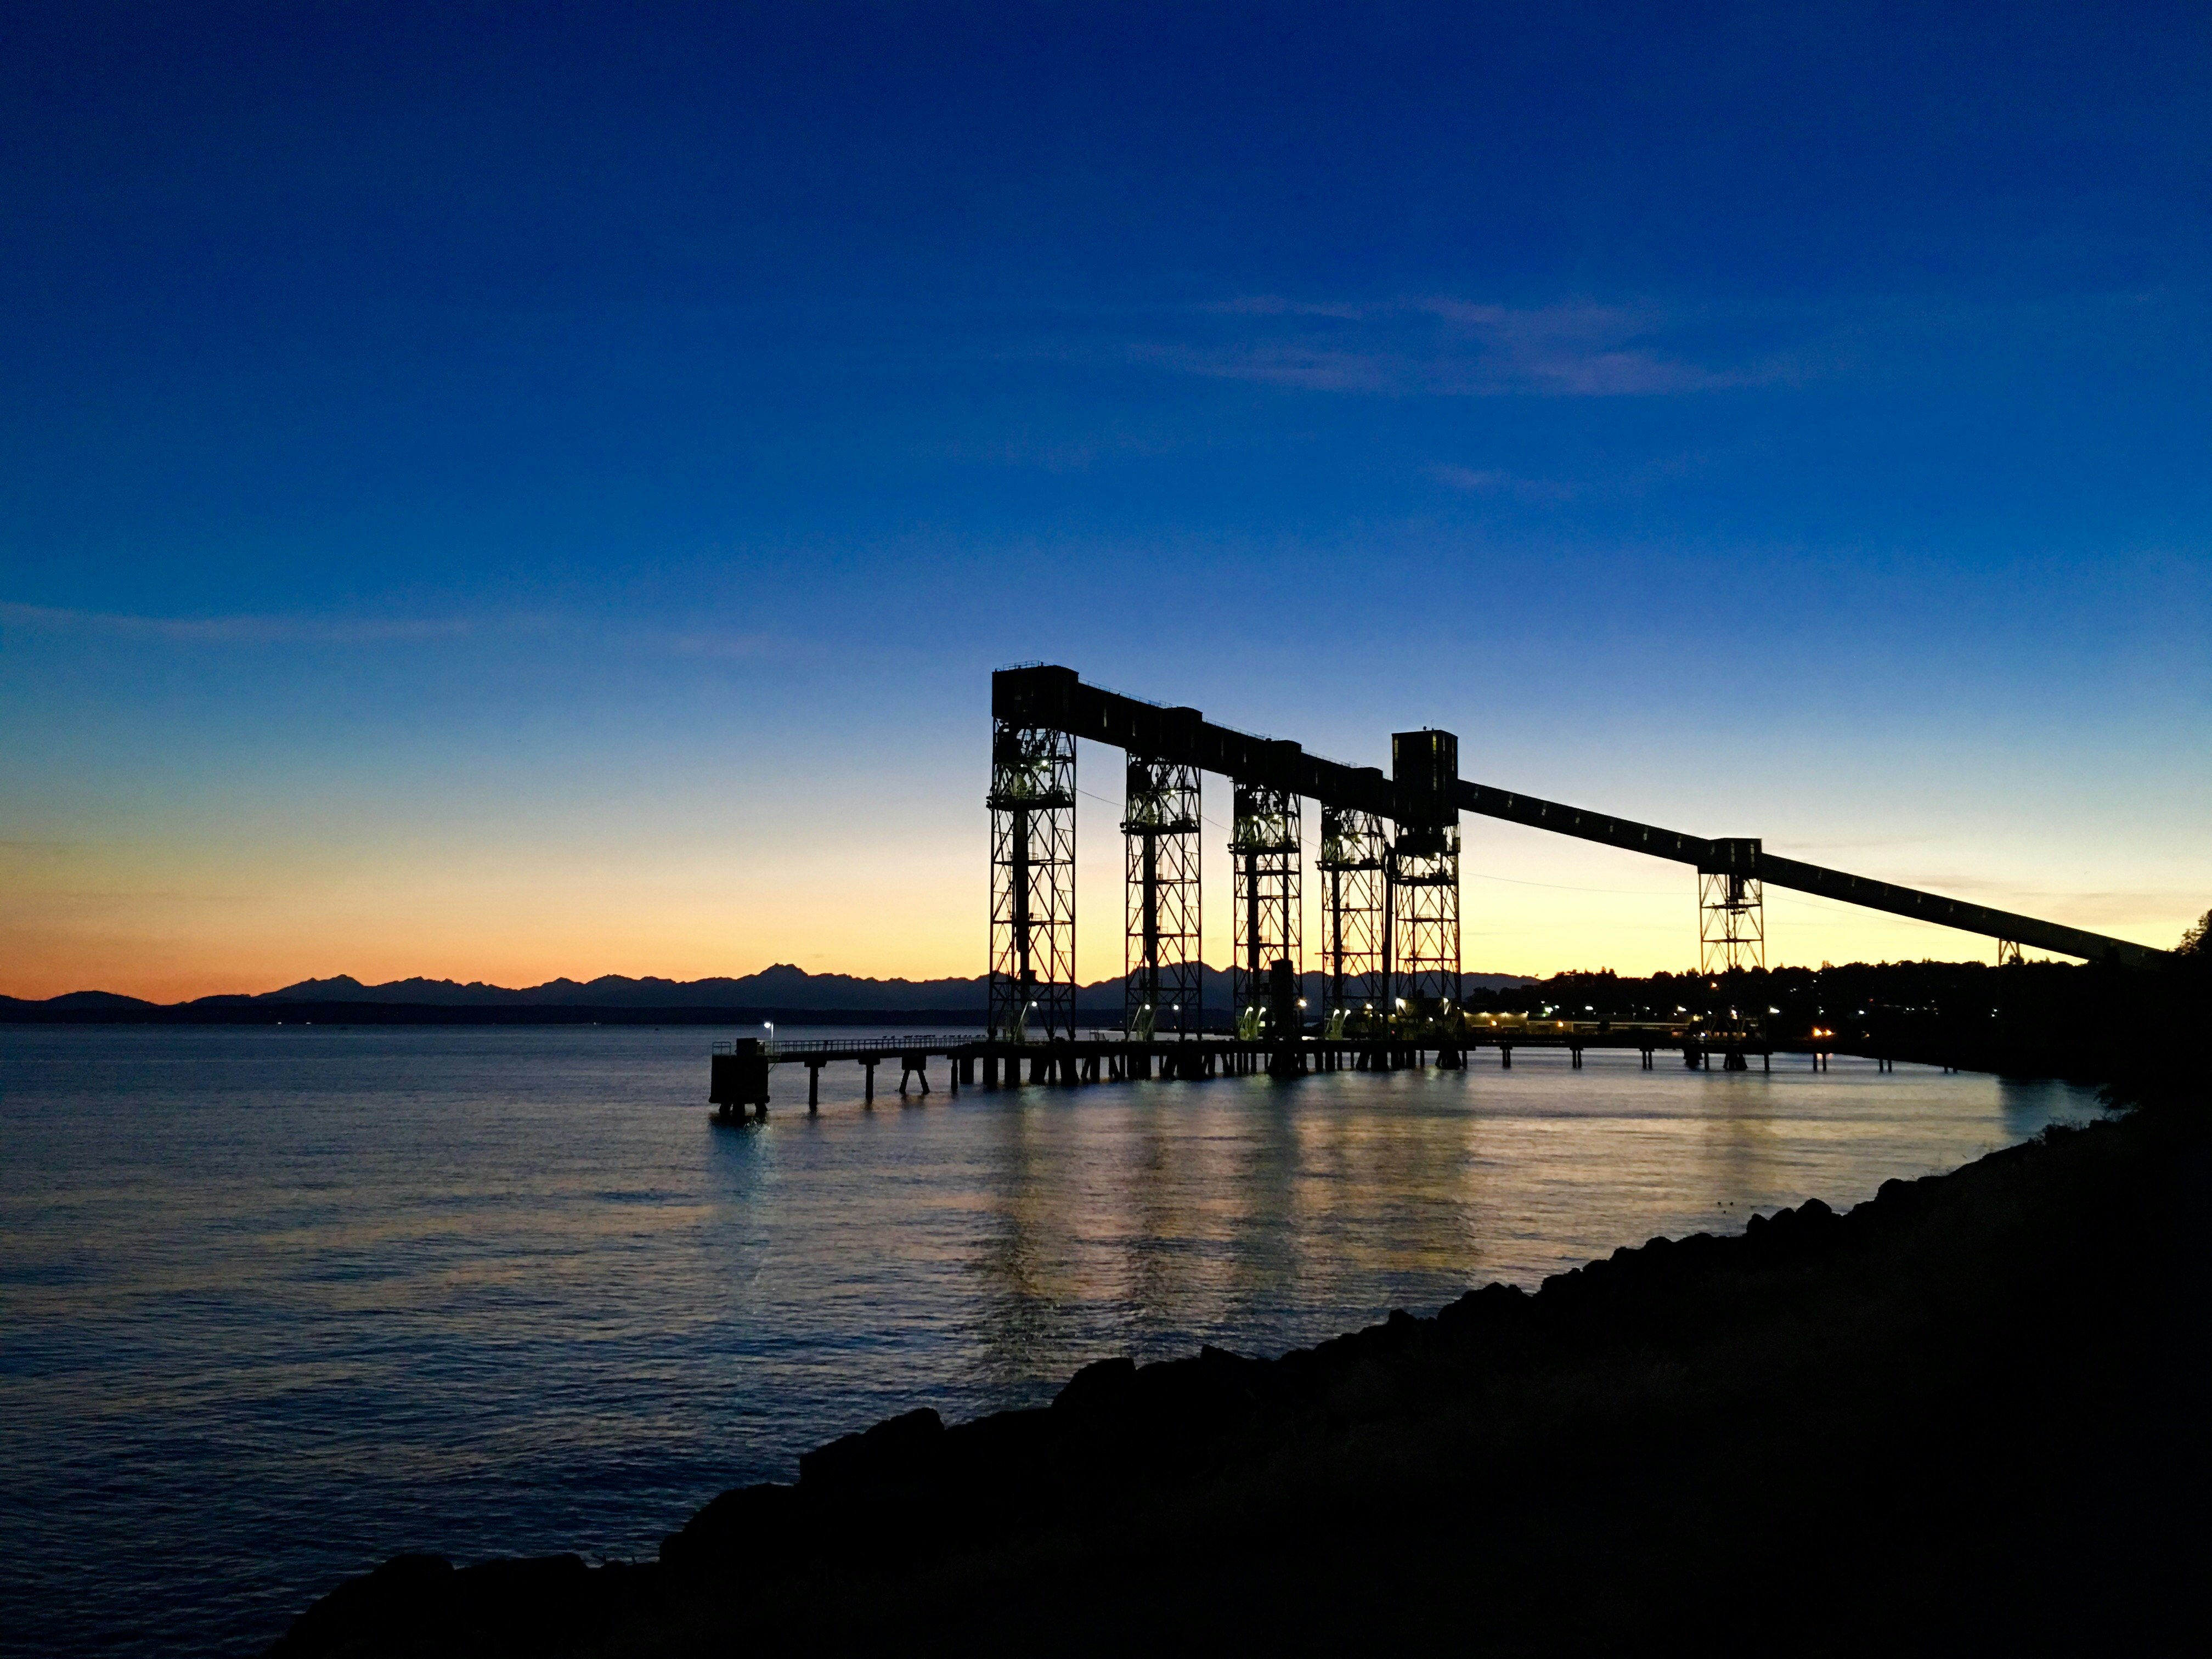 Pier 86 grain terminal at sunset, Seattle, WA.